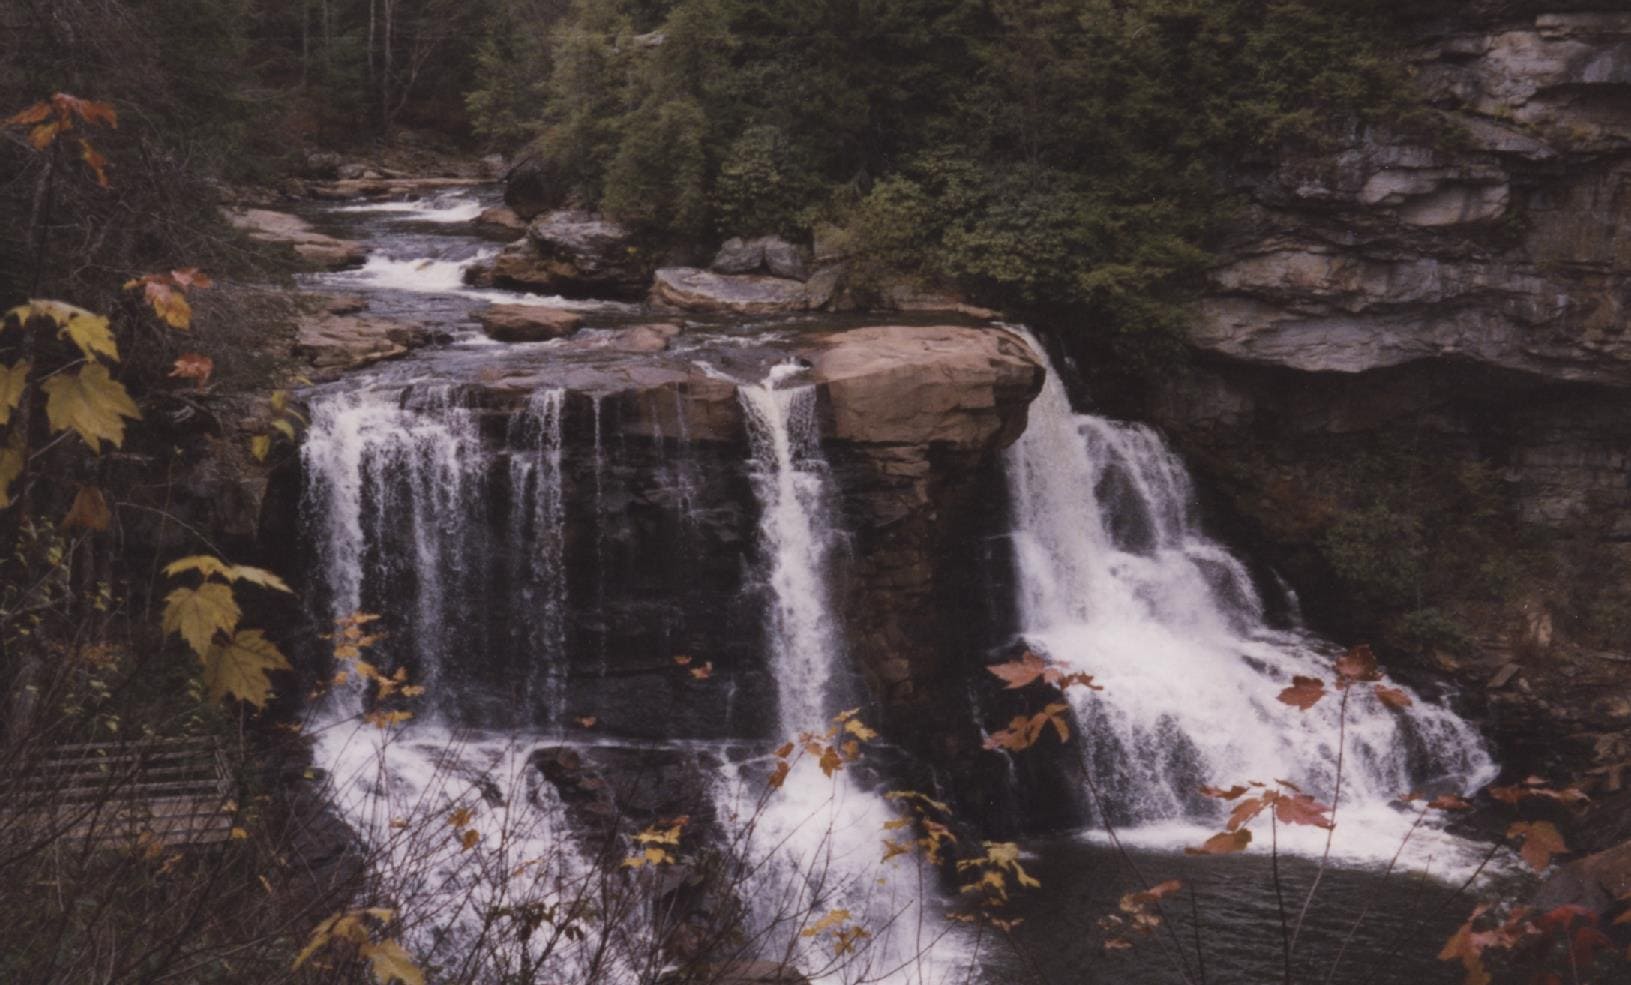 Blackwater Falls - West Virginia